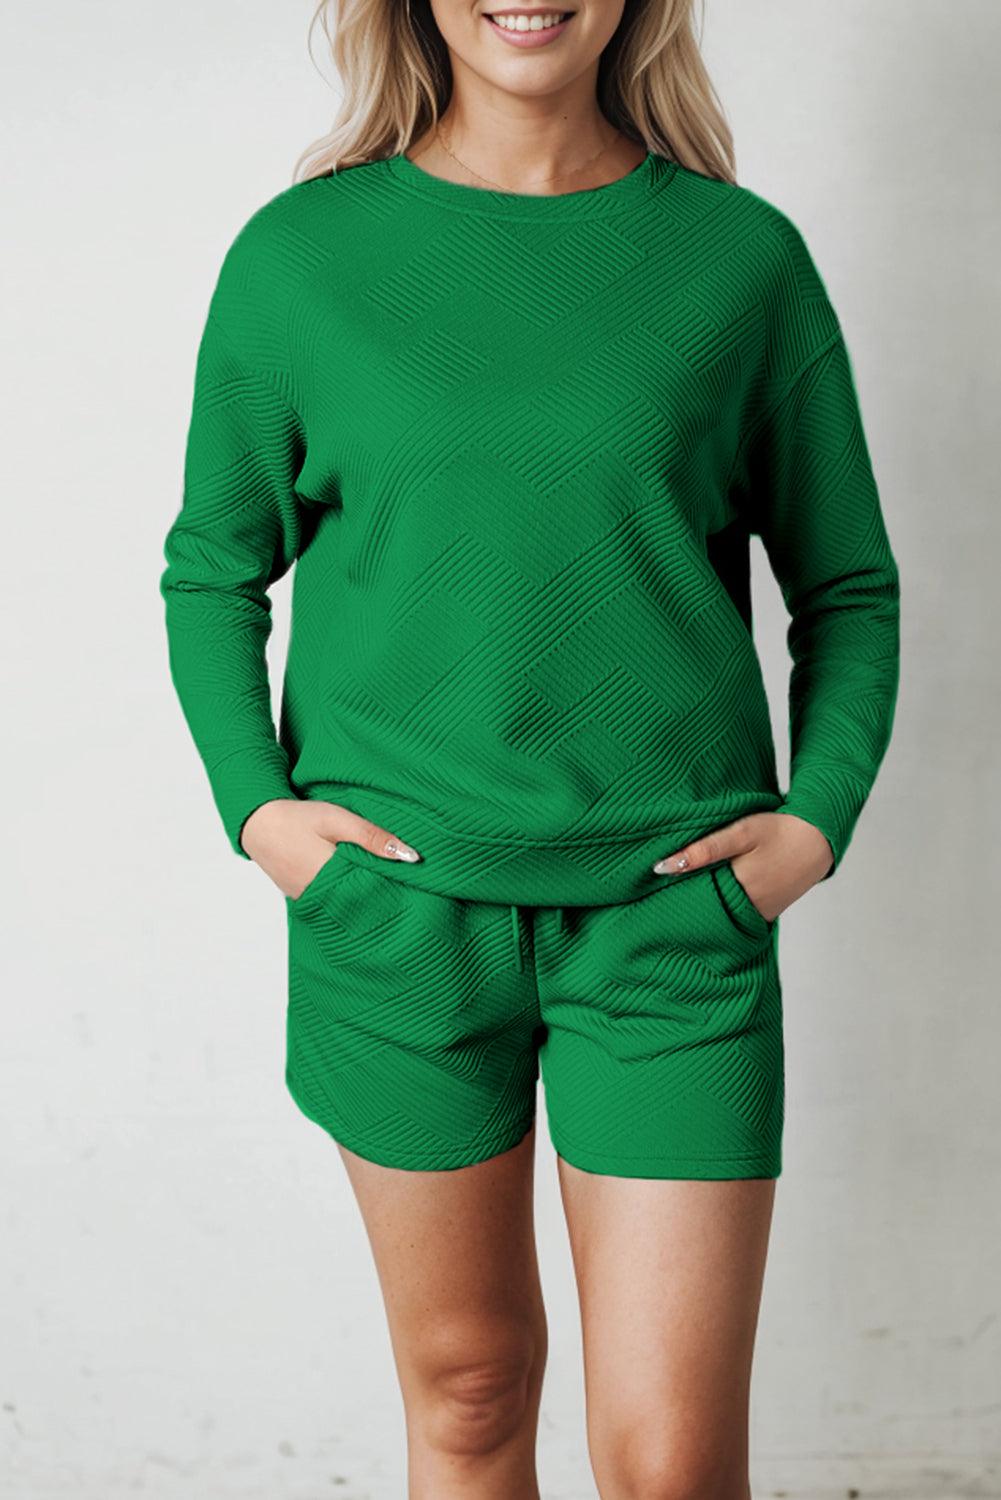 Green Textured Long Sleeve Top and Drawstring Shorts Set - L & M Kee, LLC